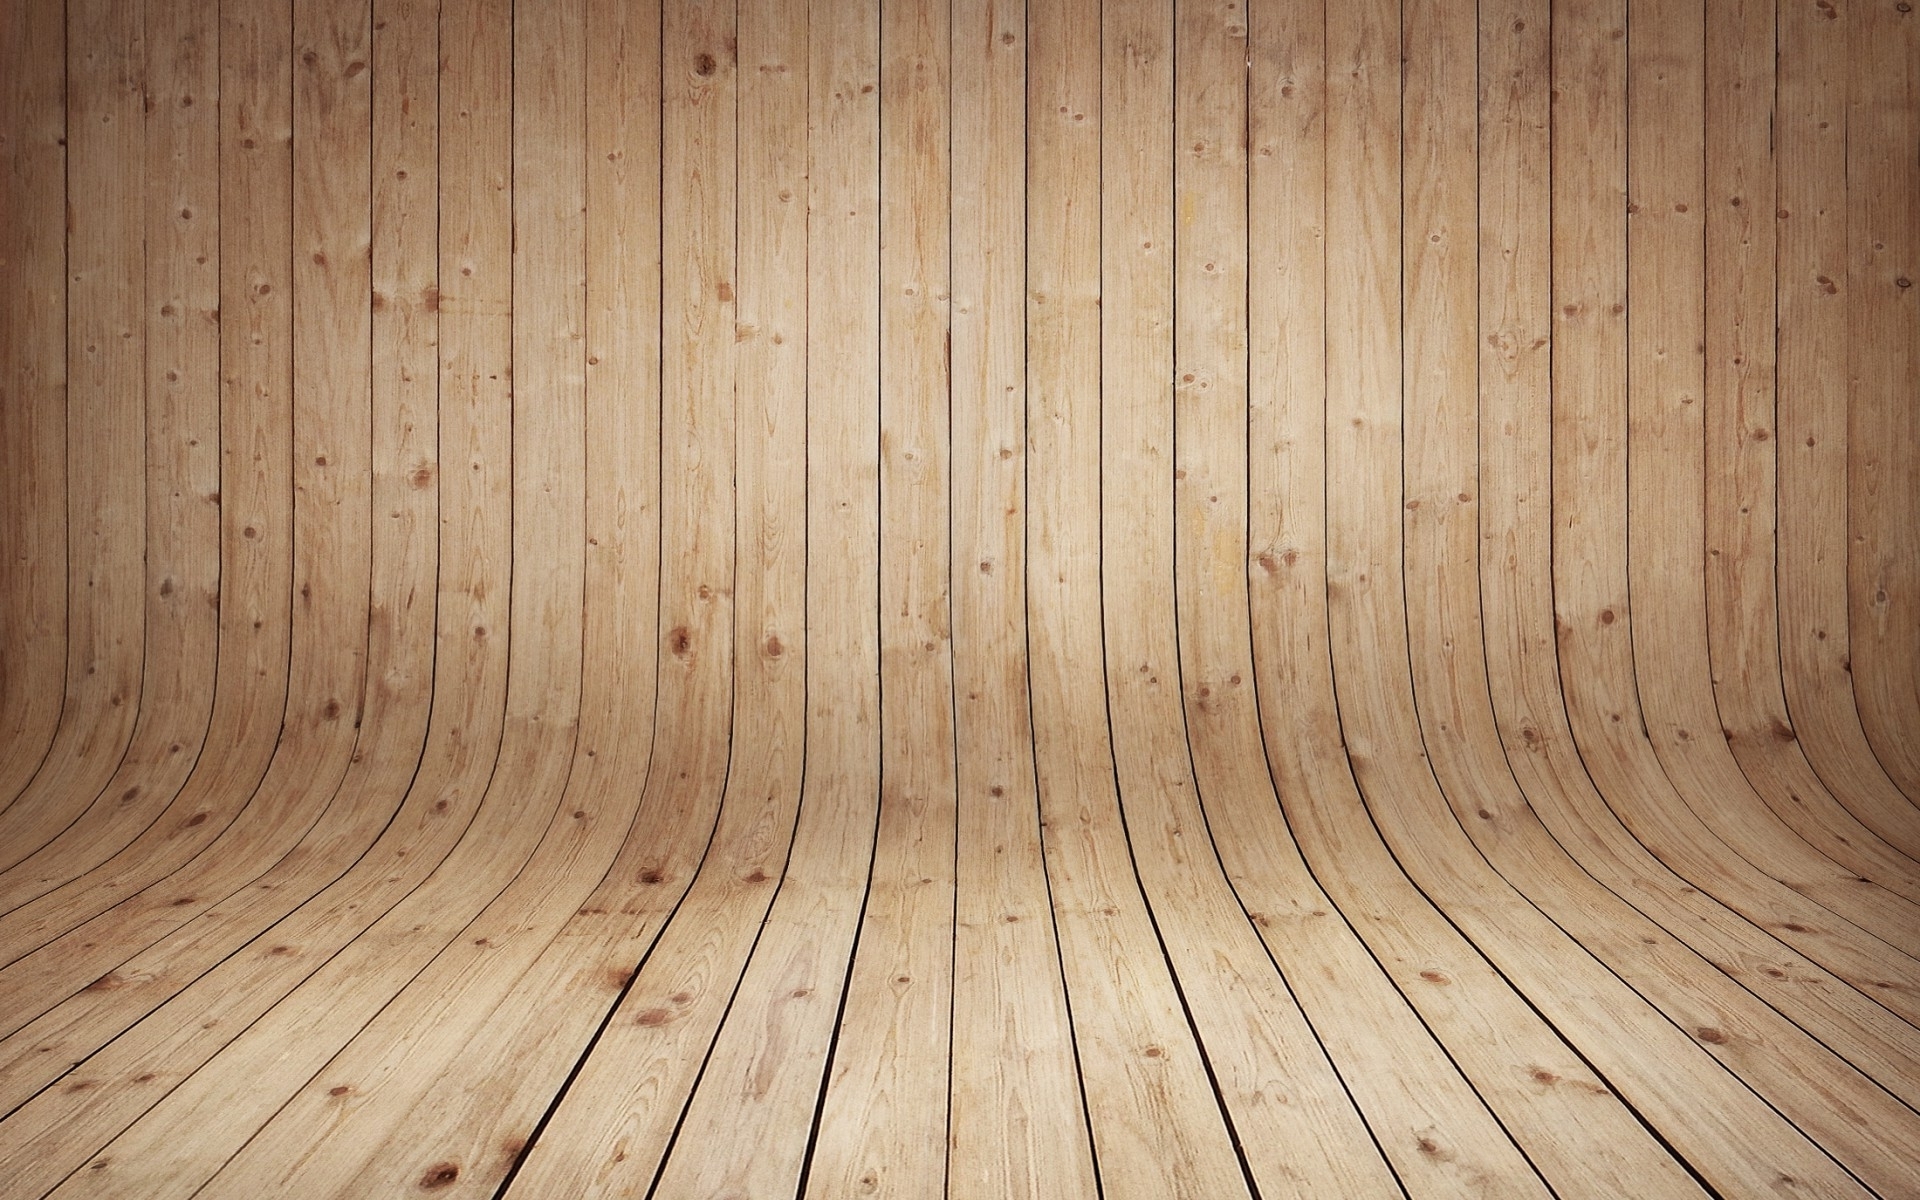 Chiếc hình nền sàn uốn cong gỗ đẹp mắt sẽ khiến bạn mê mẩn từ lần nhìn đầu tiên. Thiết kế uốn cong độc đáo sẽ mang đến cho không gian của bạn sự khác biệt; vật liệu gỗ tạo nên sự ấm áp và sang trọng. Hãy tải xuống và cài đặt ngay bộ hình nền này để mang đến cho không gian của bạn sự trẻ trung và hiện đại.